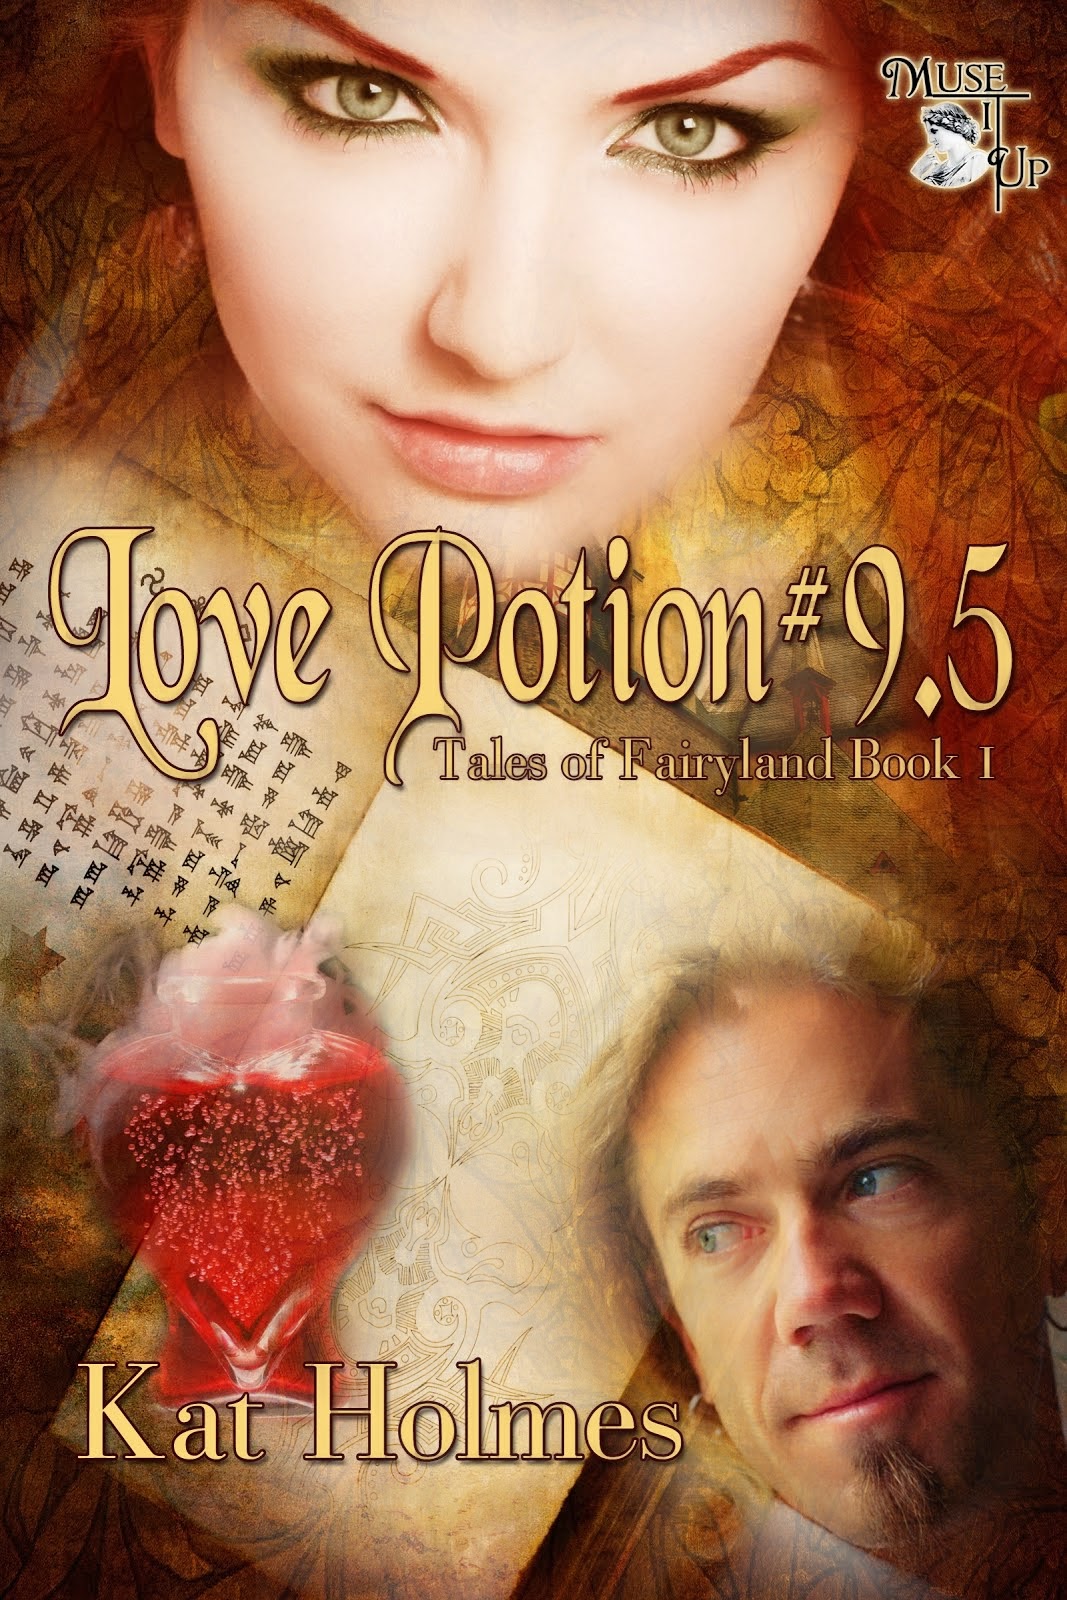 Love Poition # 9.5